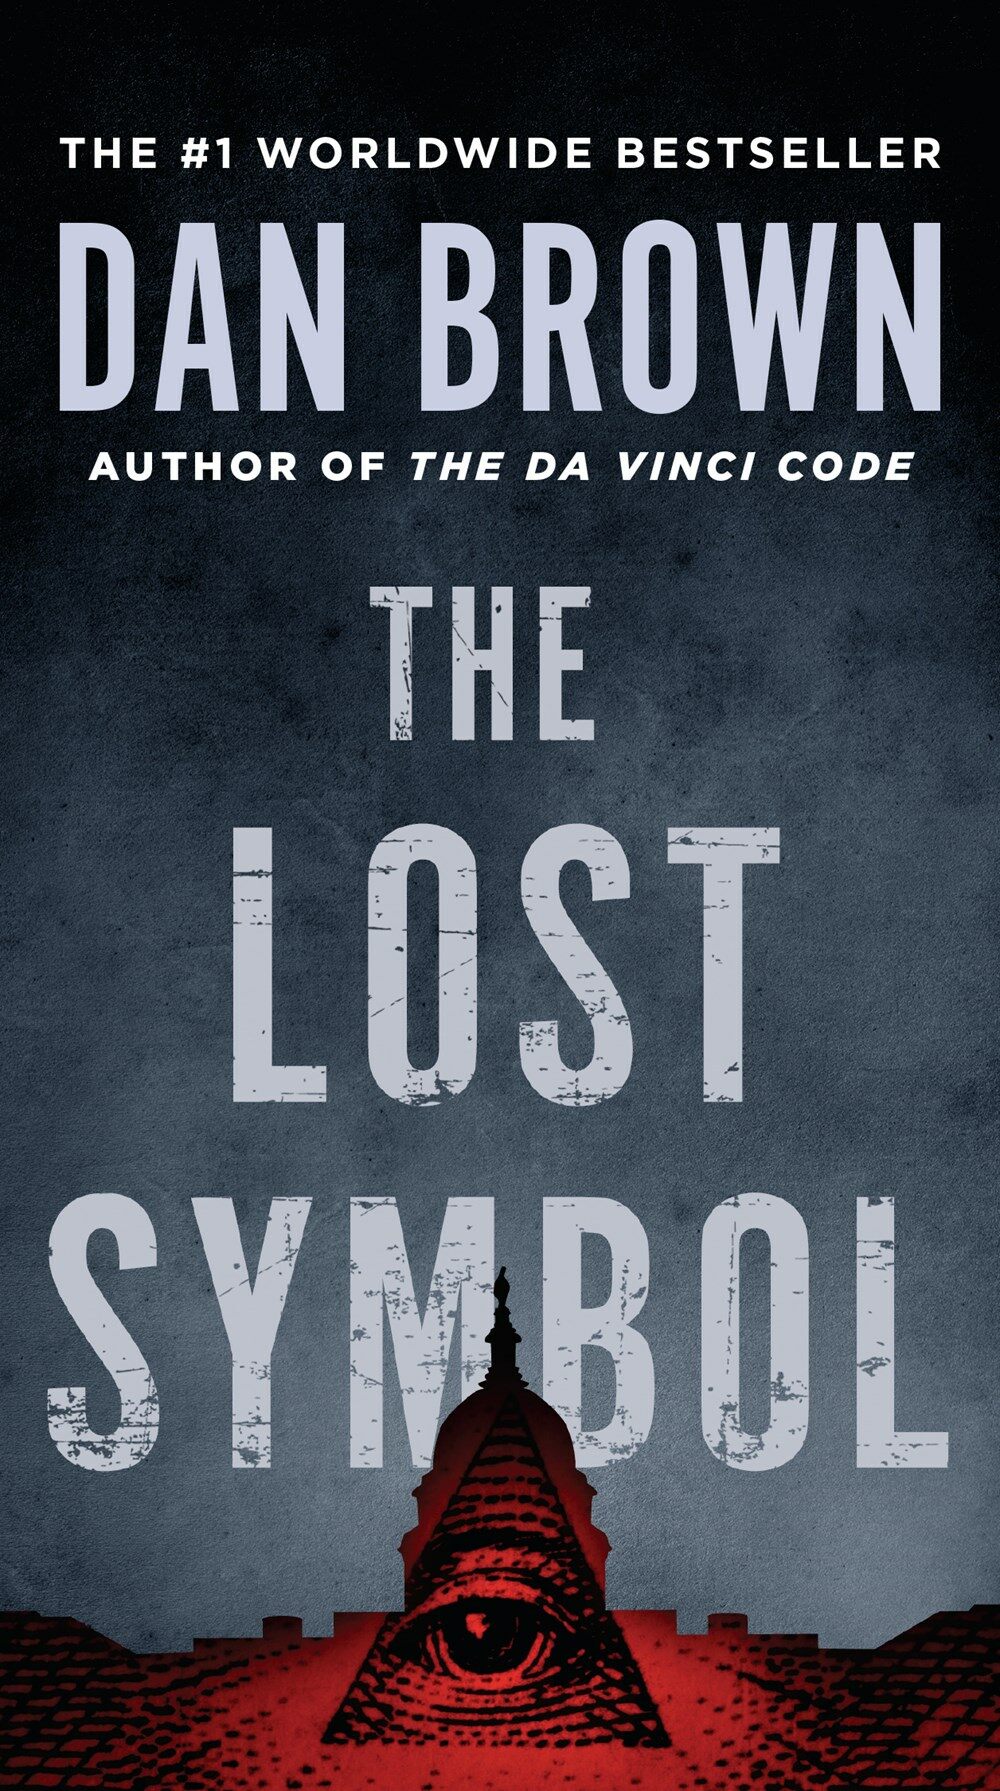 [중고] The Lost Symbol (Mass Market Paperback)